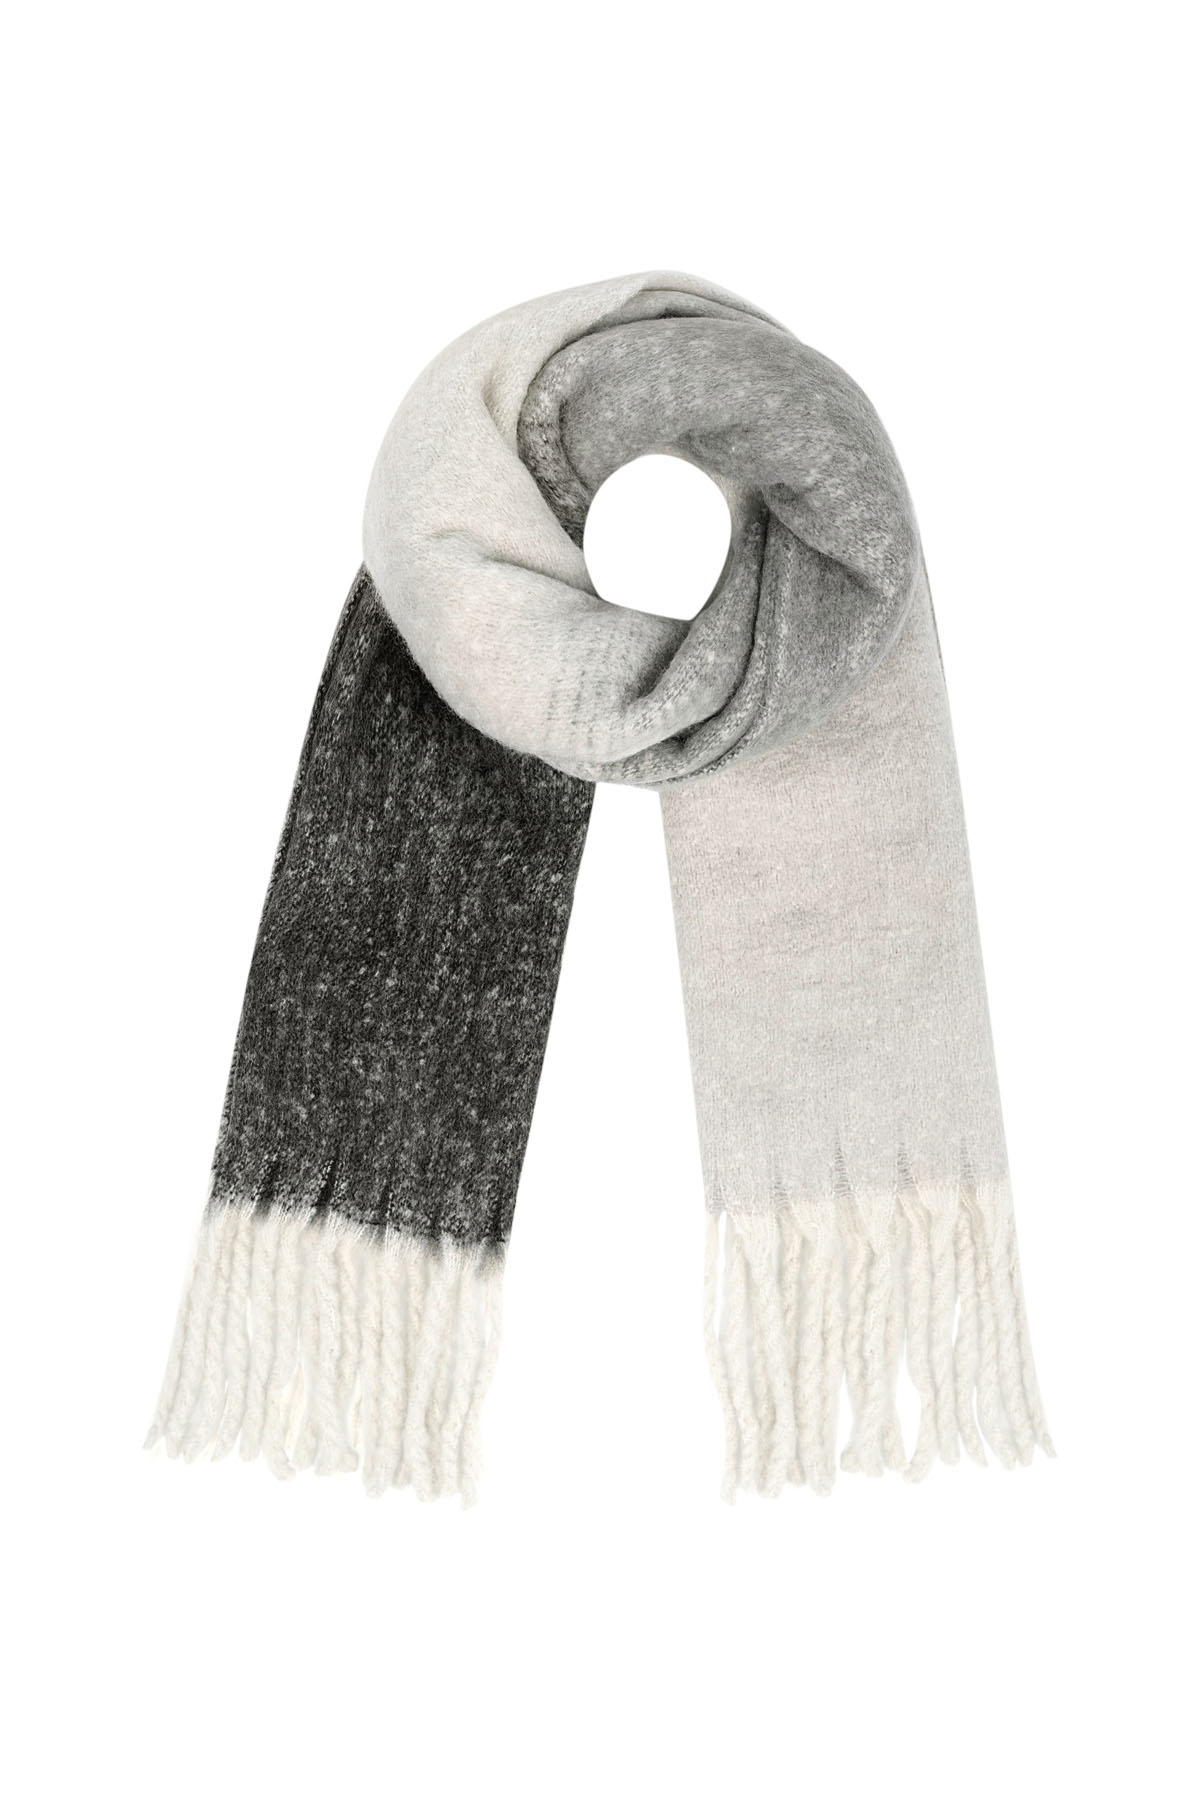 Farbiger Basic-Schal mit Schnüren - Schwarz und Weiß h5 